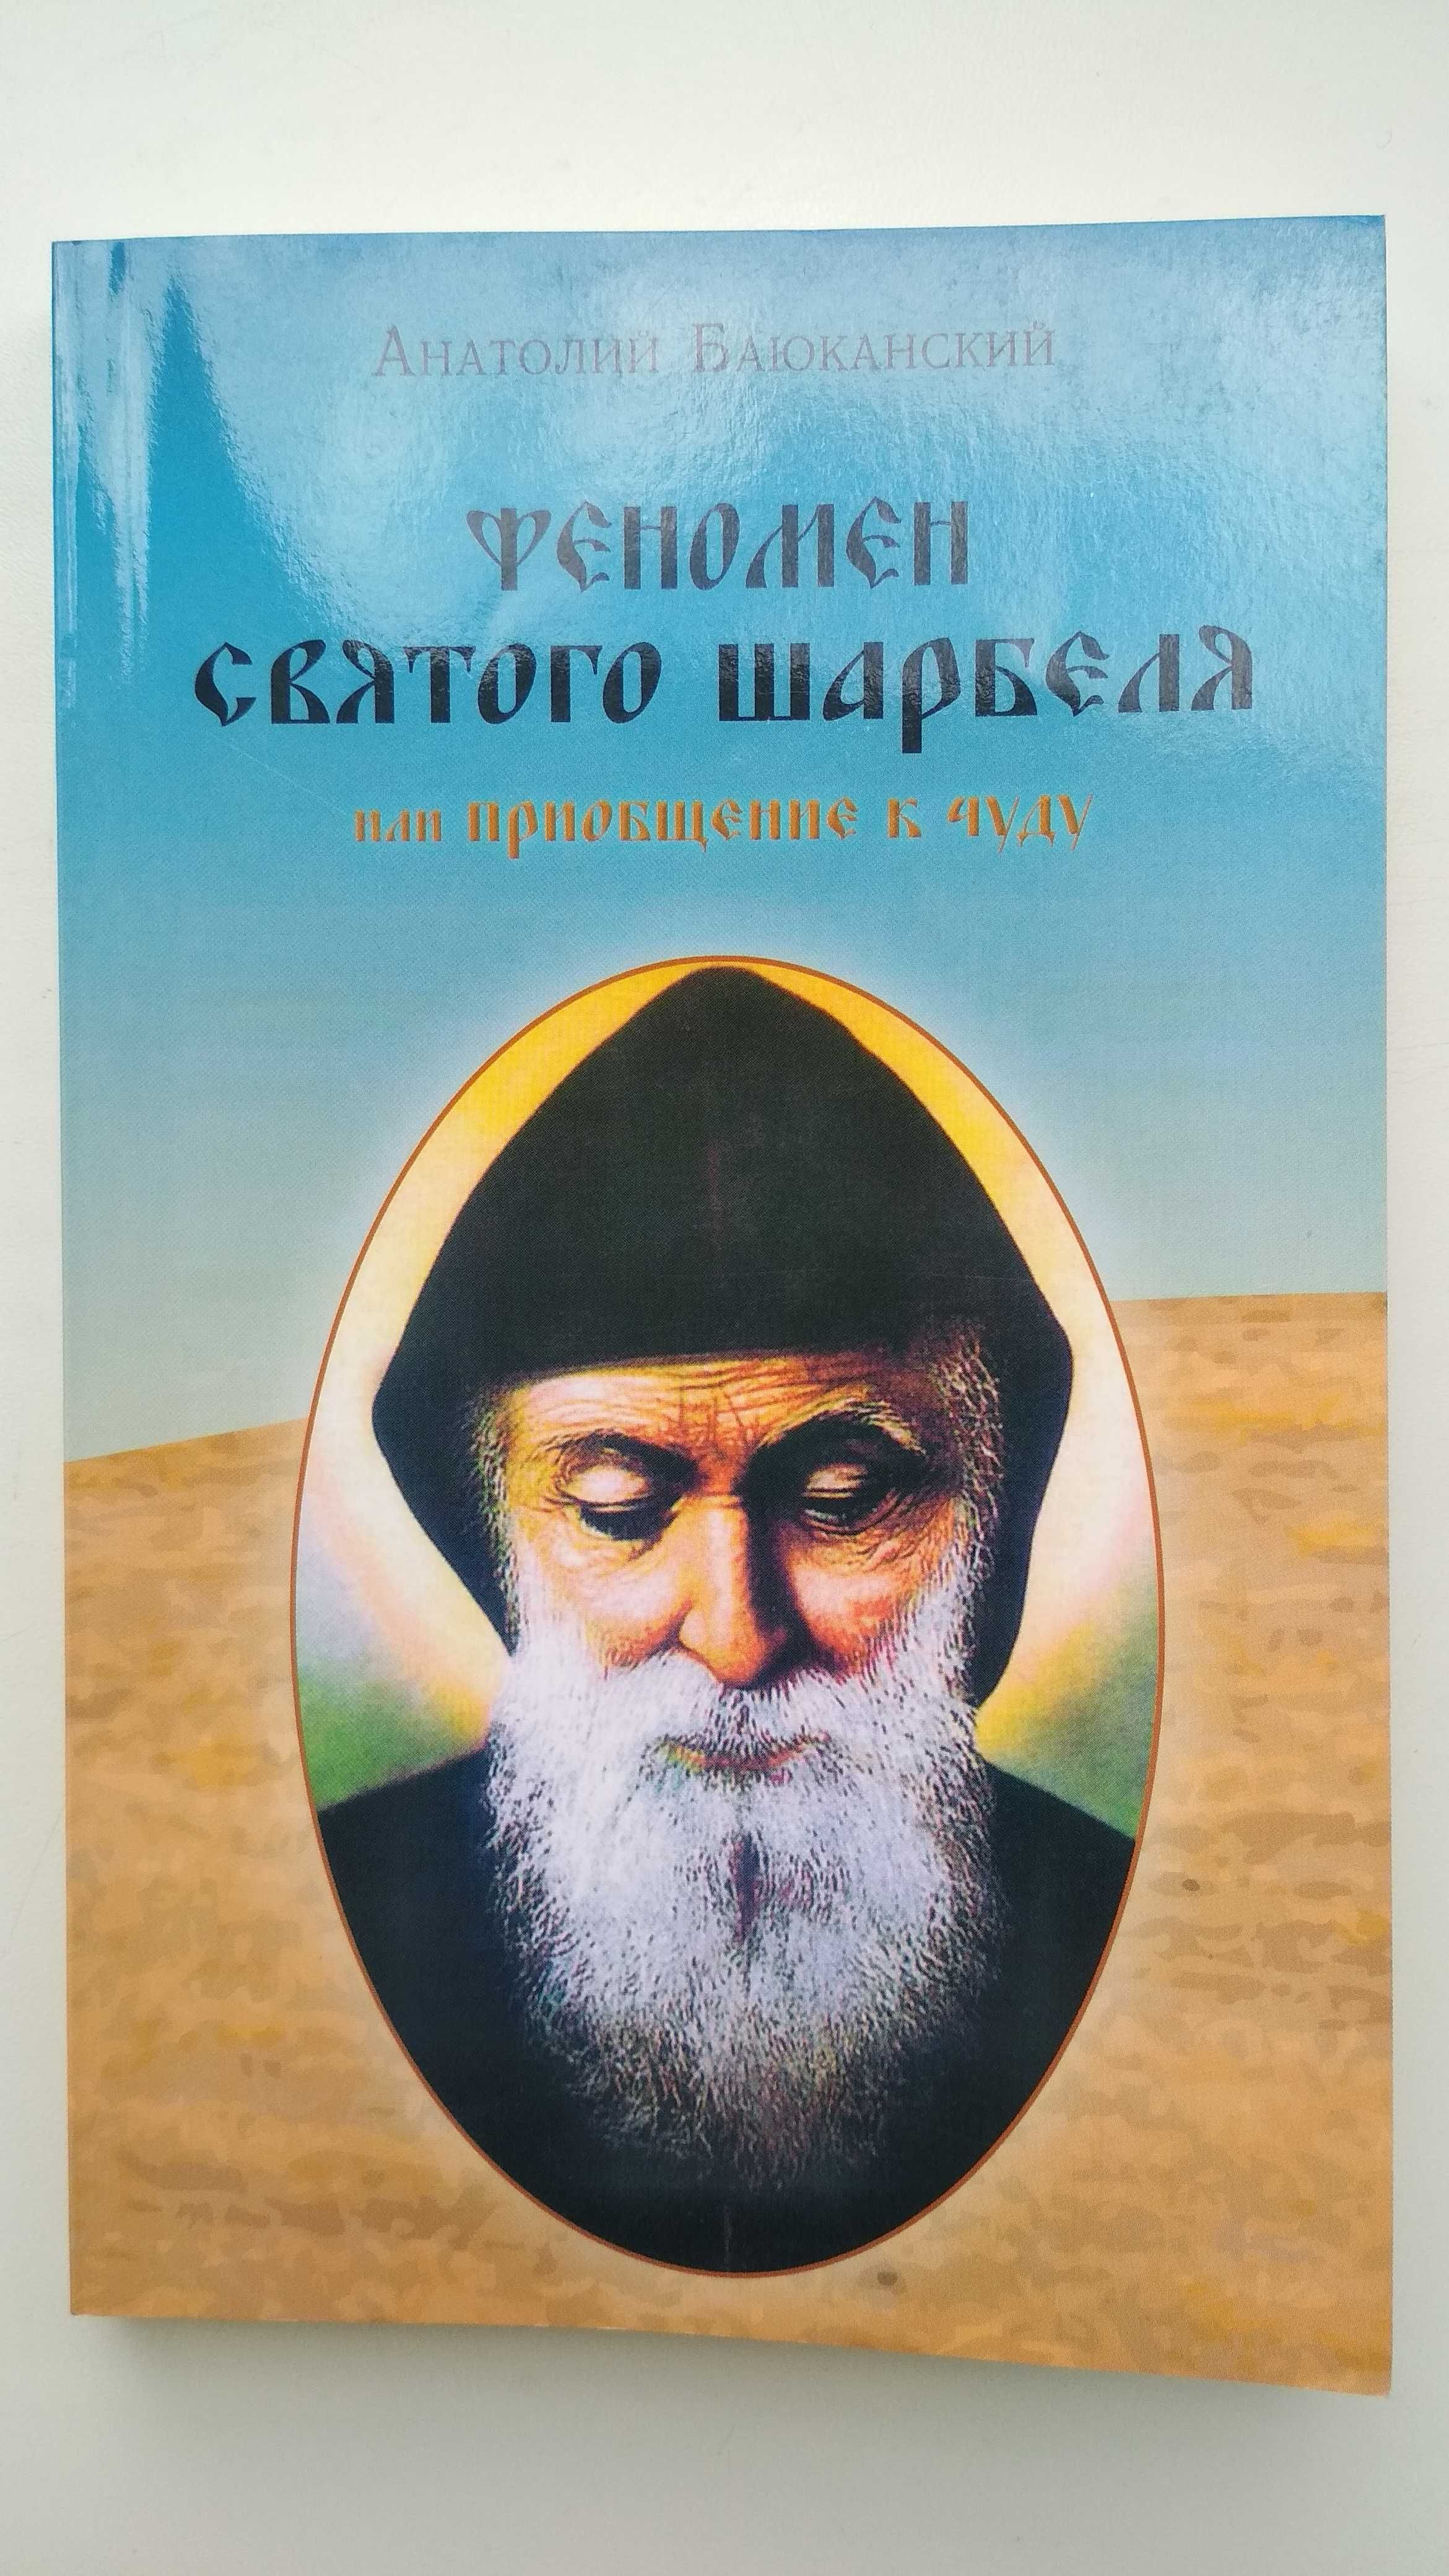 Книга А.Баюканский "Феномен святого шарбеля или Приобщение к чуду"2012